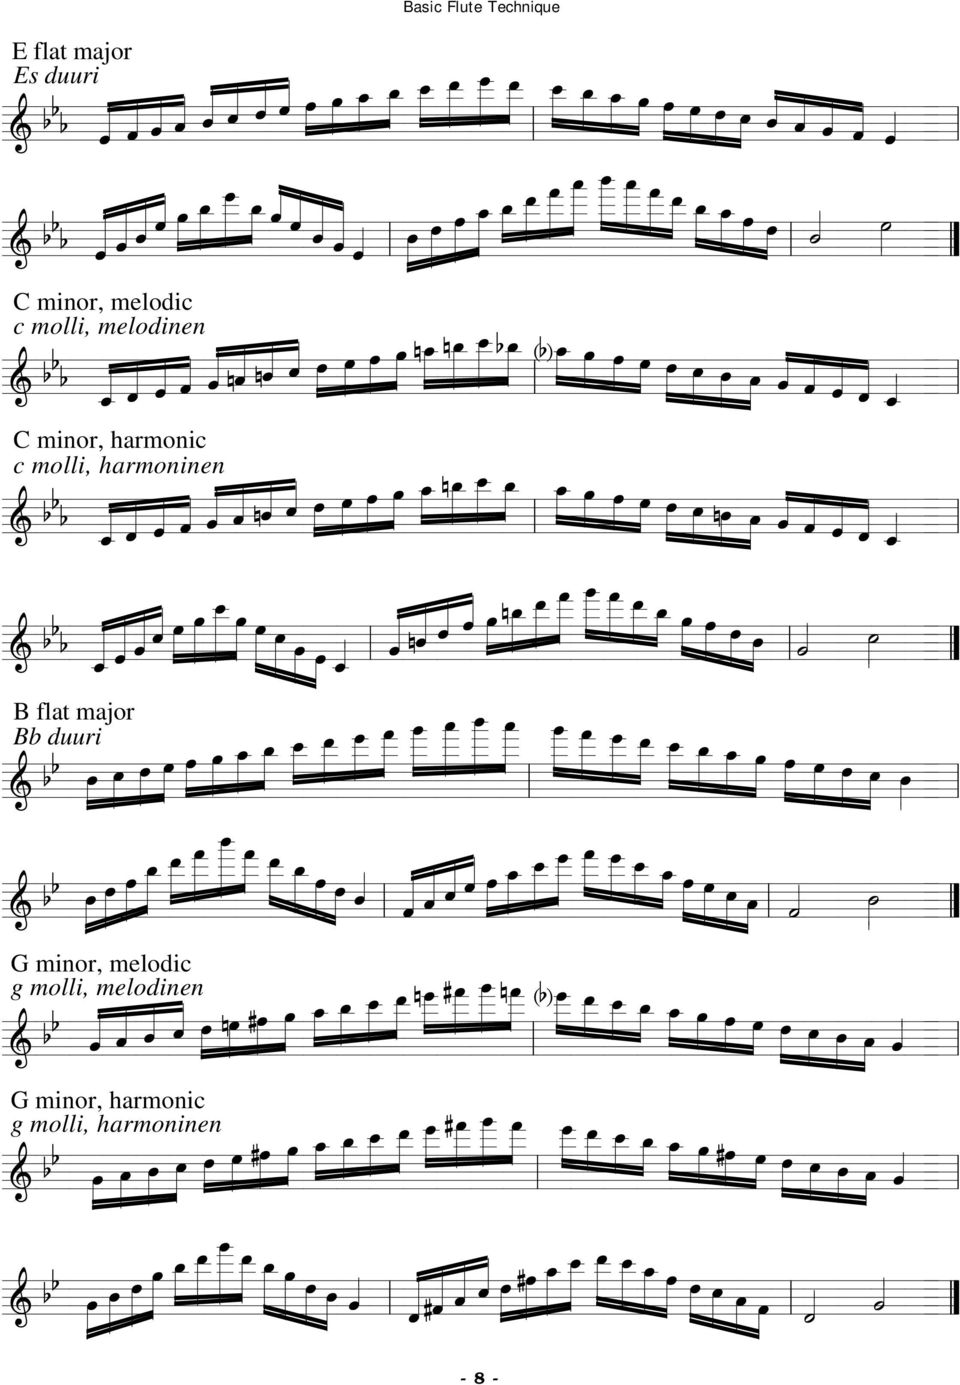 harmoninen B flat major Bb duuri G minor, melodic g